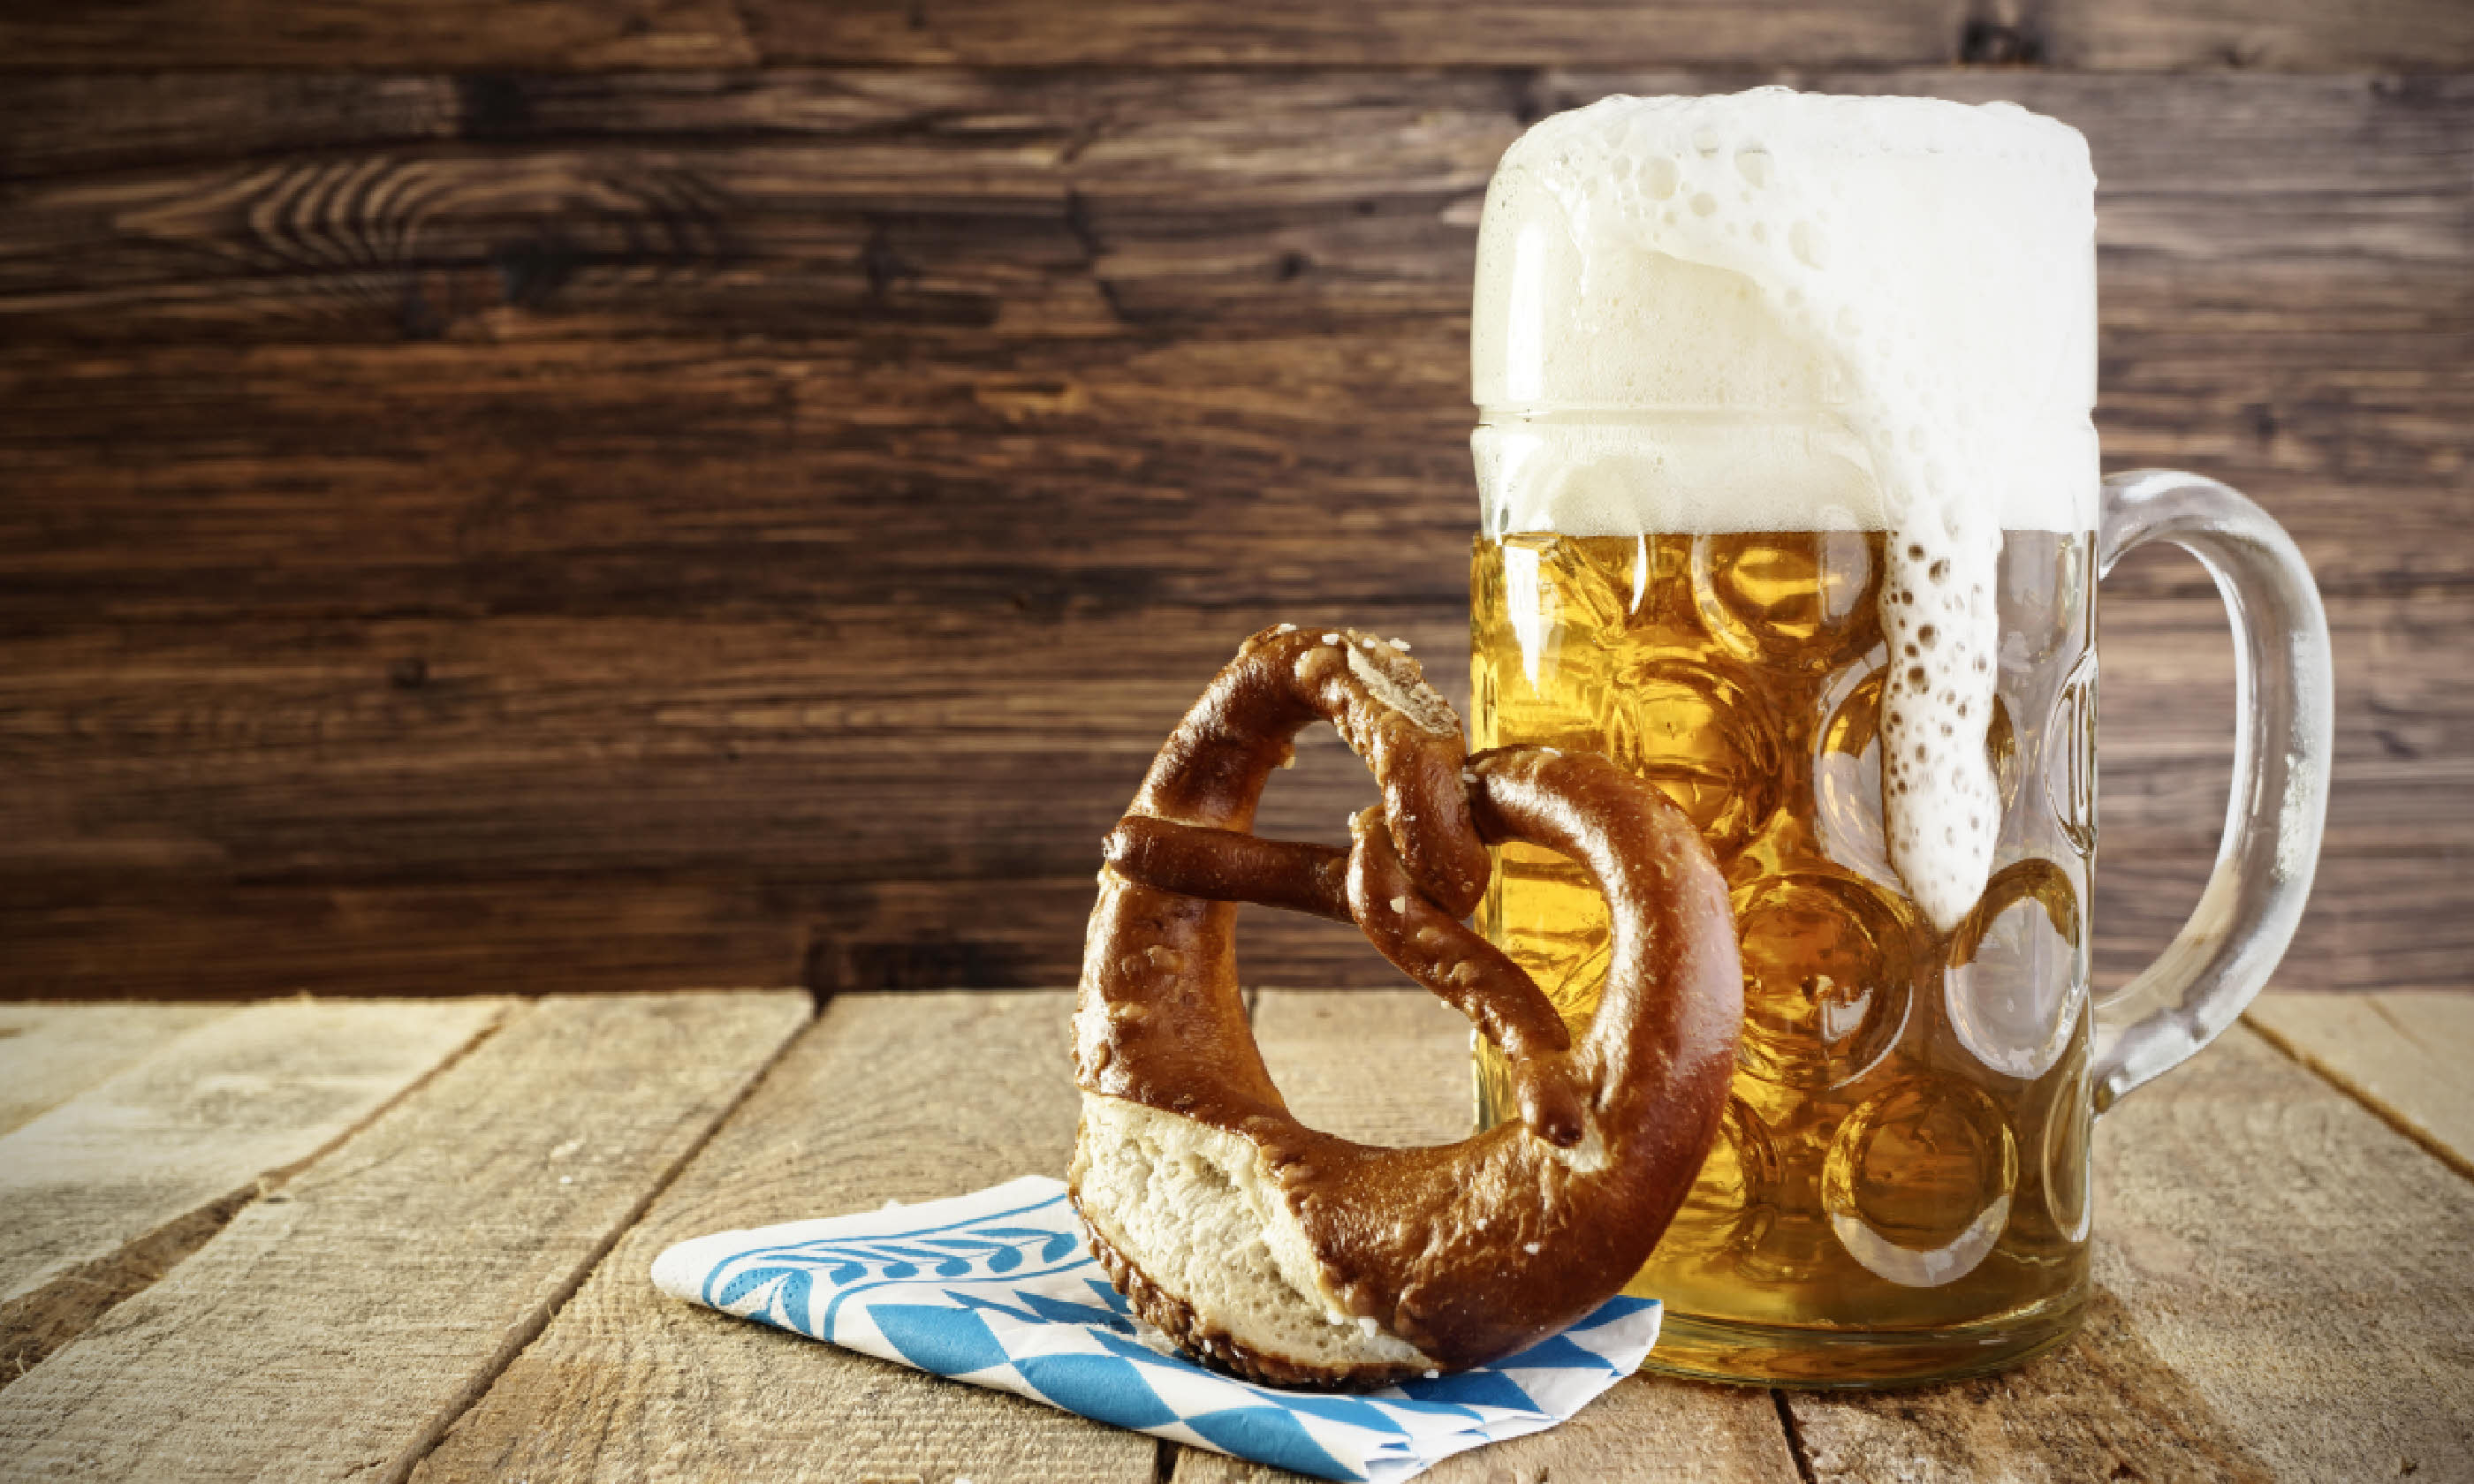 Beer and pretzel (Shutterstock)